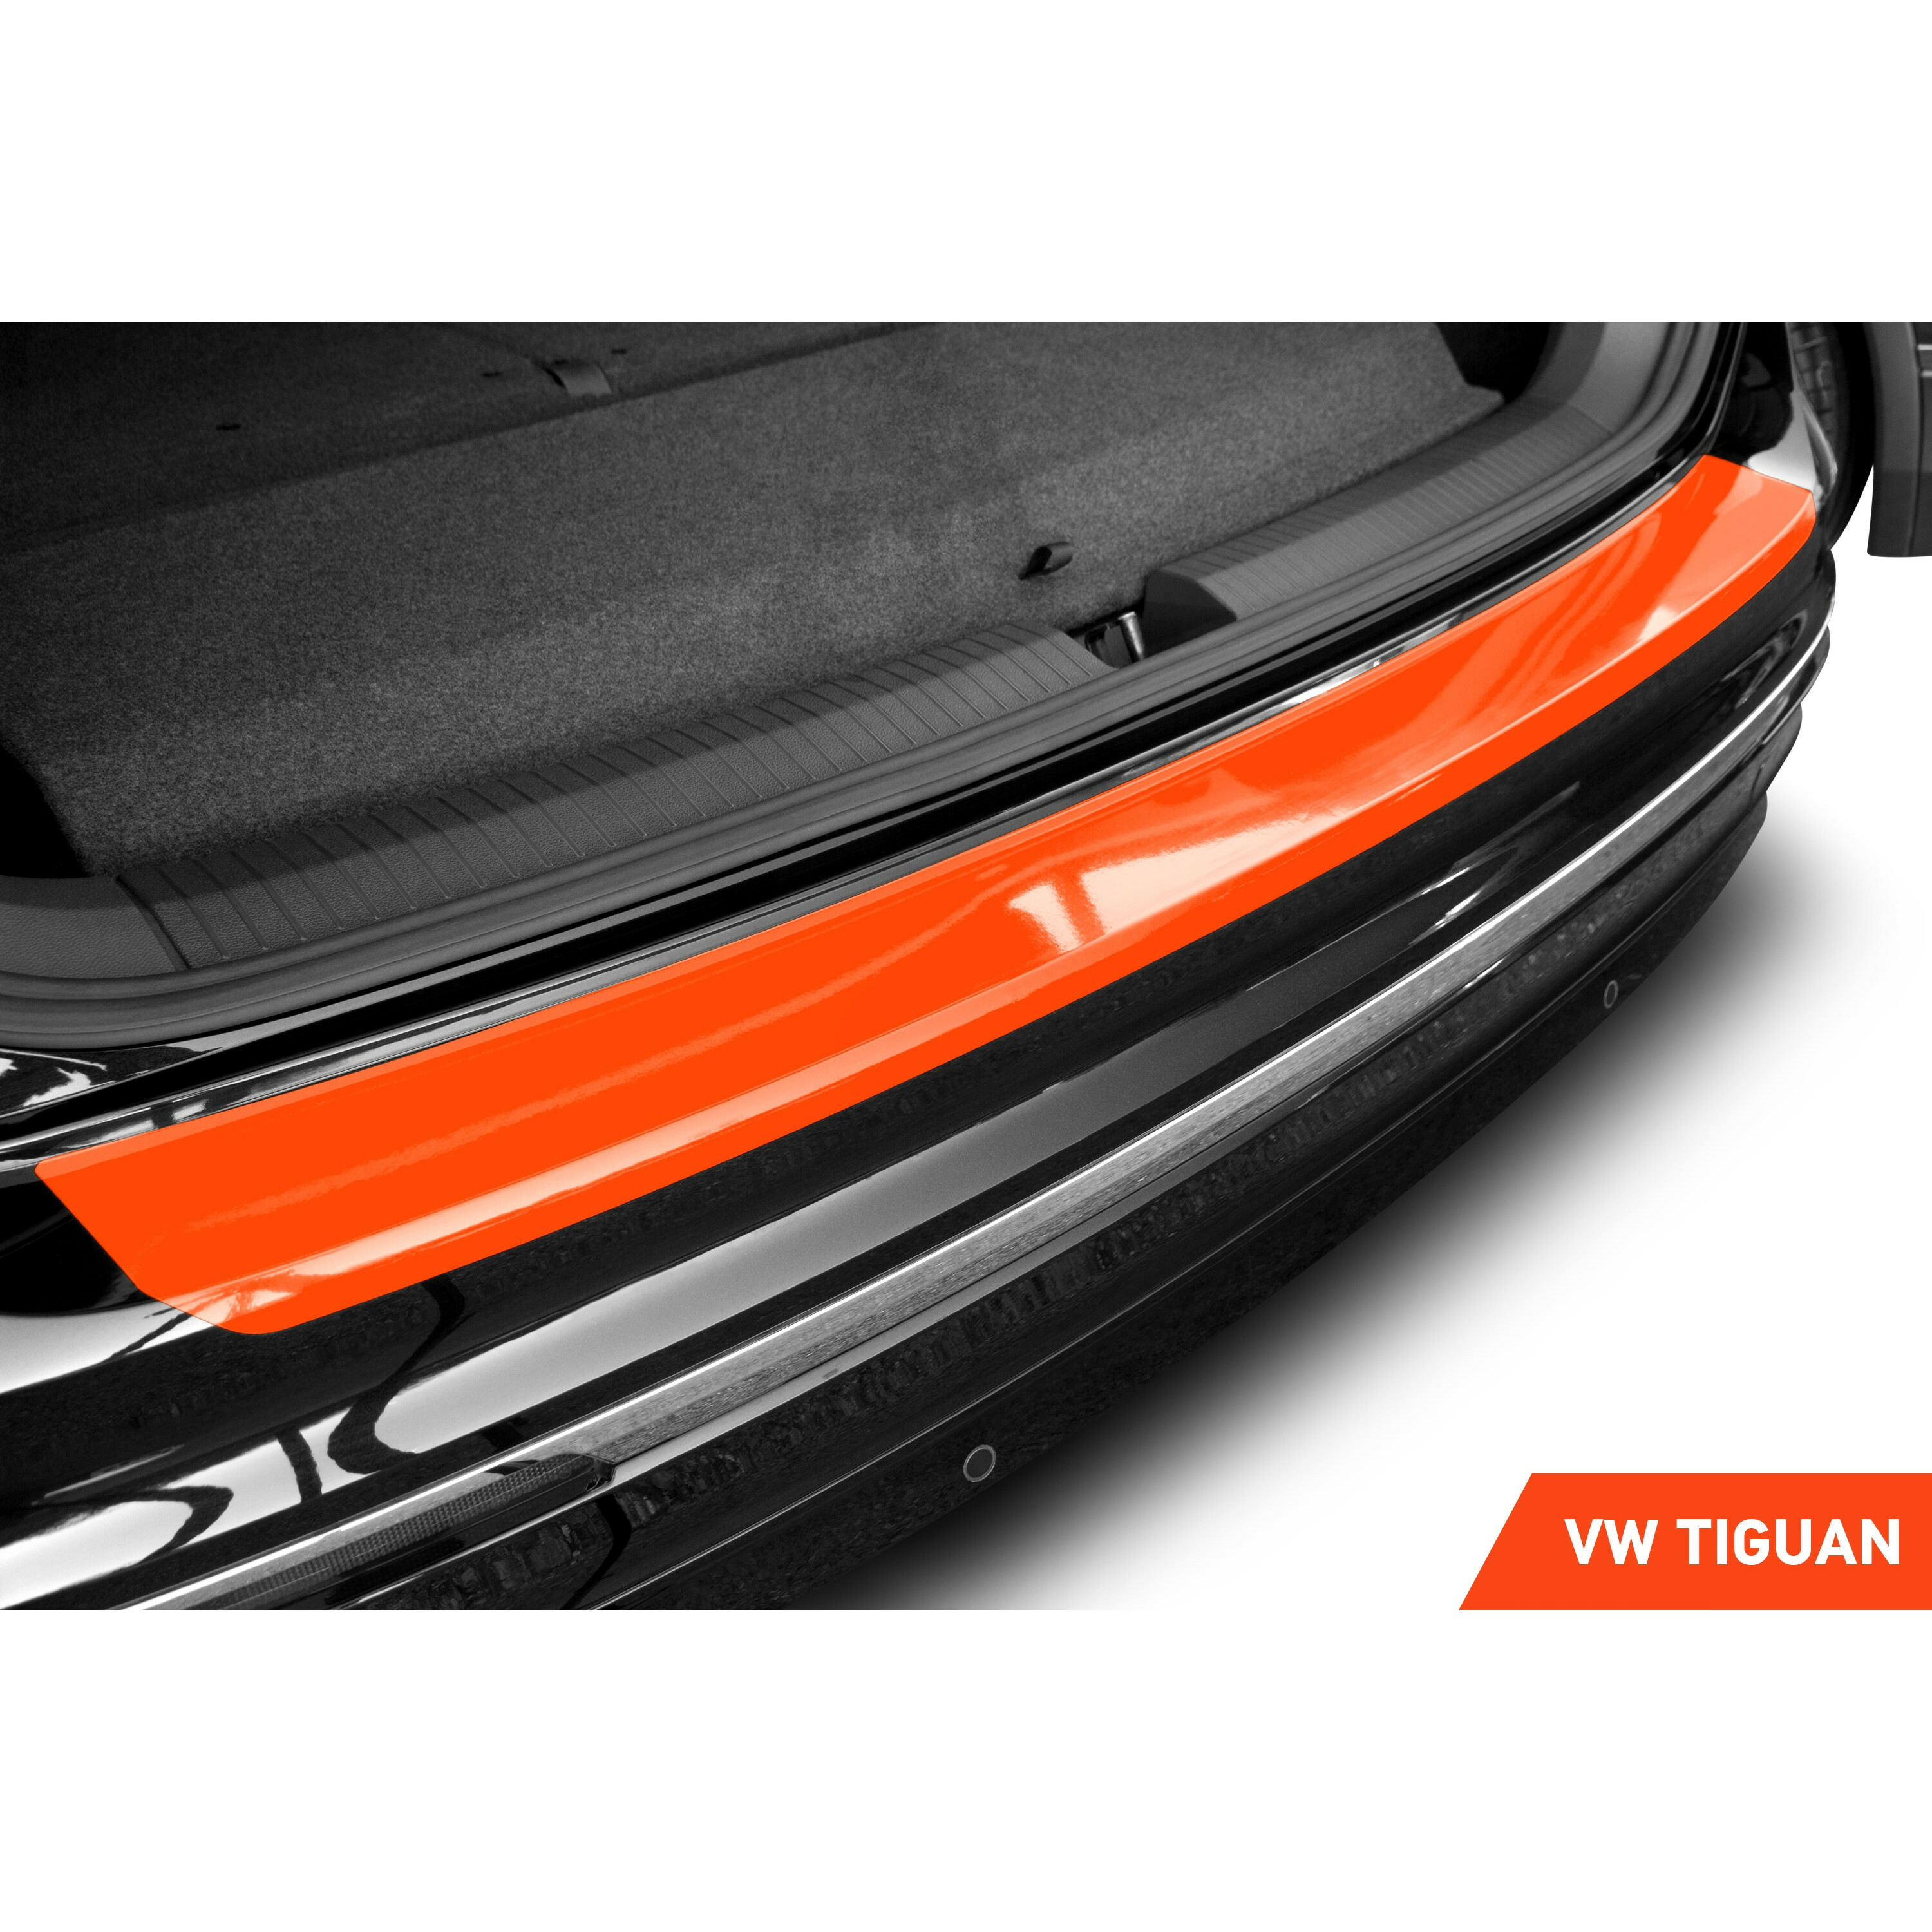 Edelstahl Ladekantenschutz für VW Tiguan 2 und Allspace 5 Jahre Garantie  2016